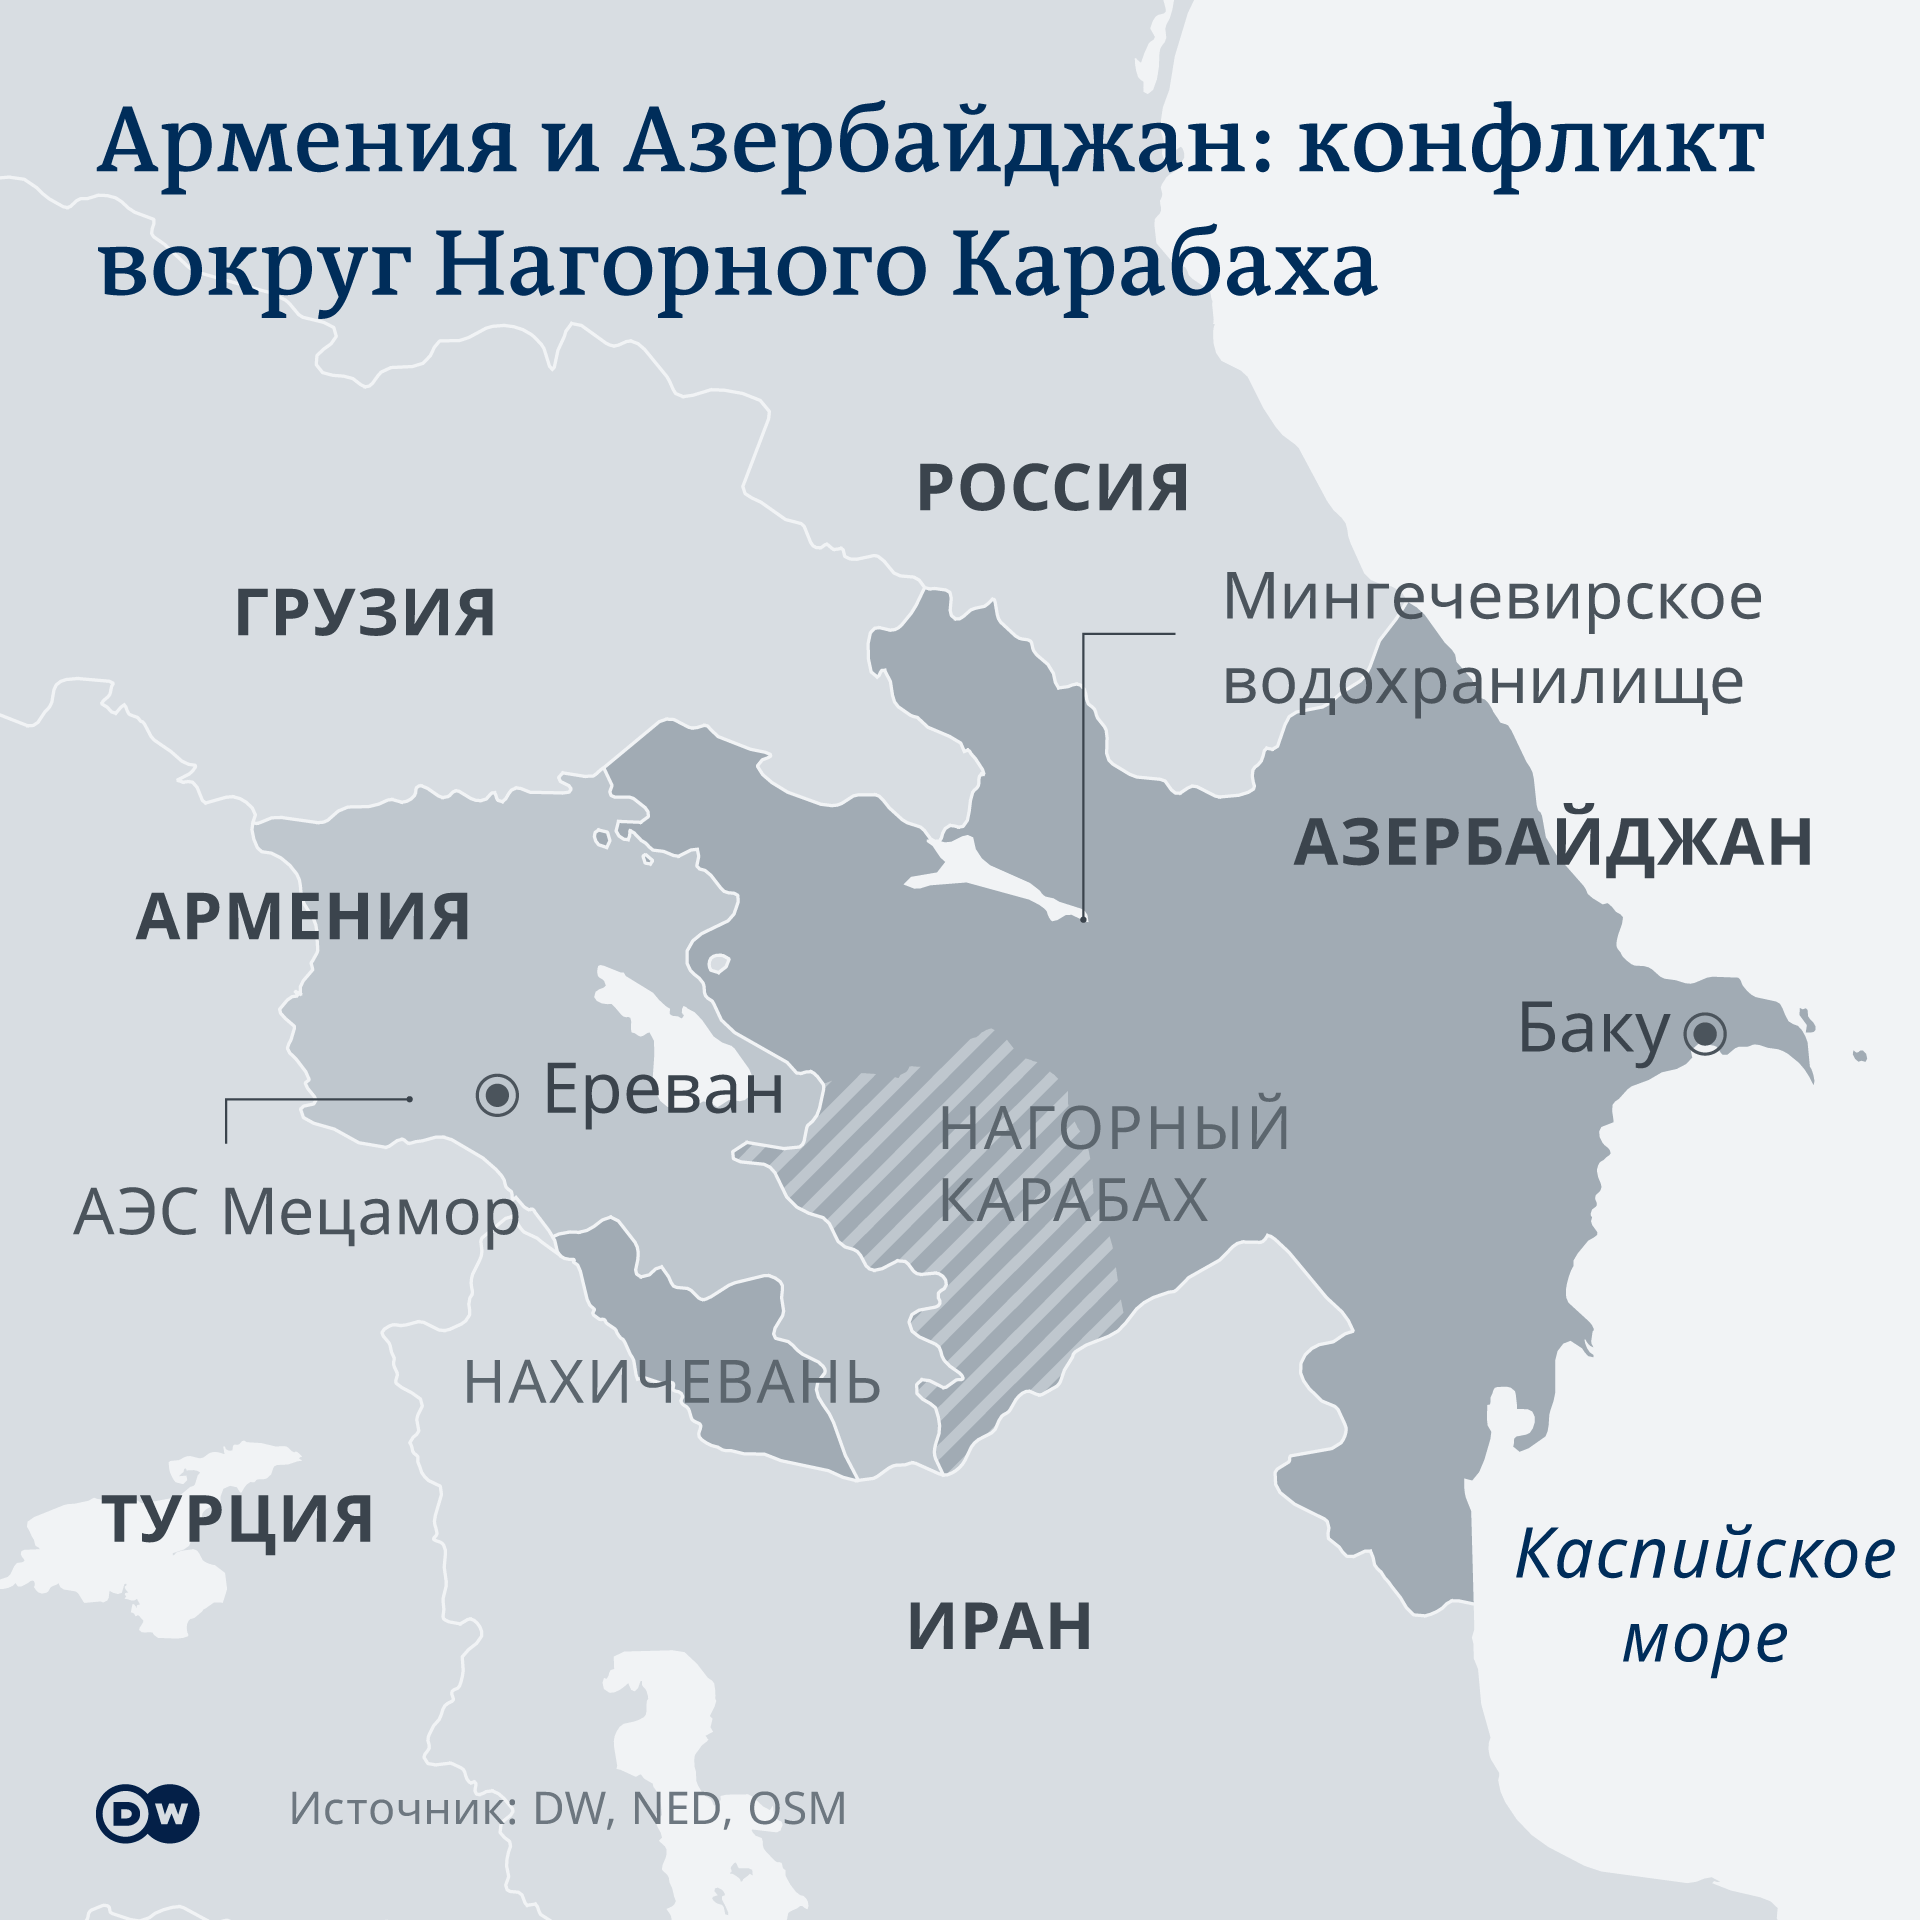 Karte - Armenien/Aserbaidschan - RU